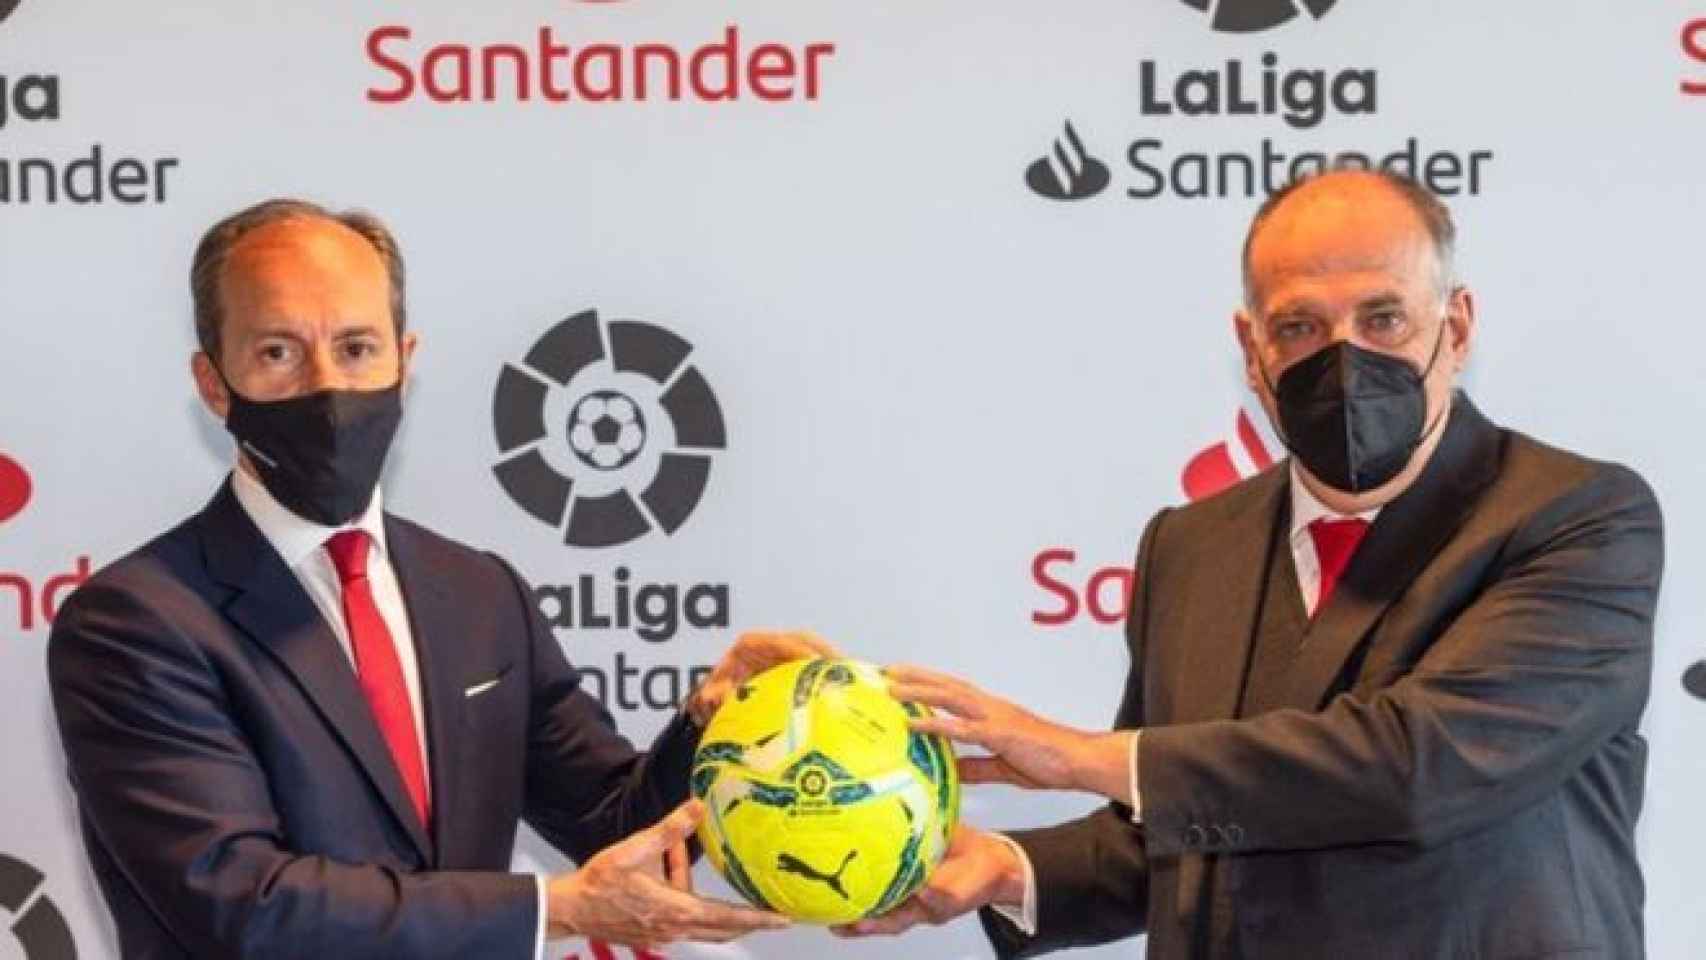 Banco Santander y LaLiga renuevan su acuerdo de colaboración